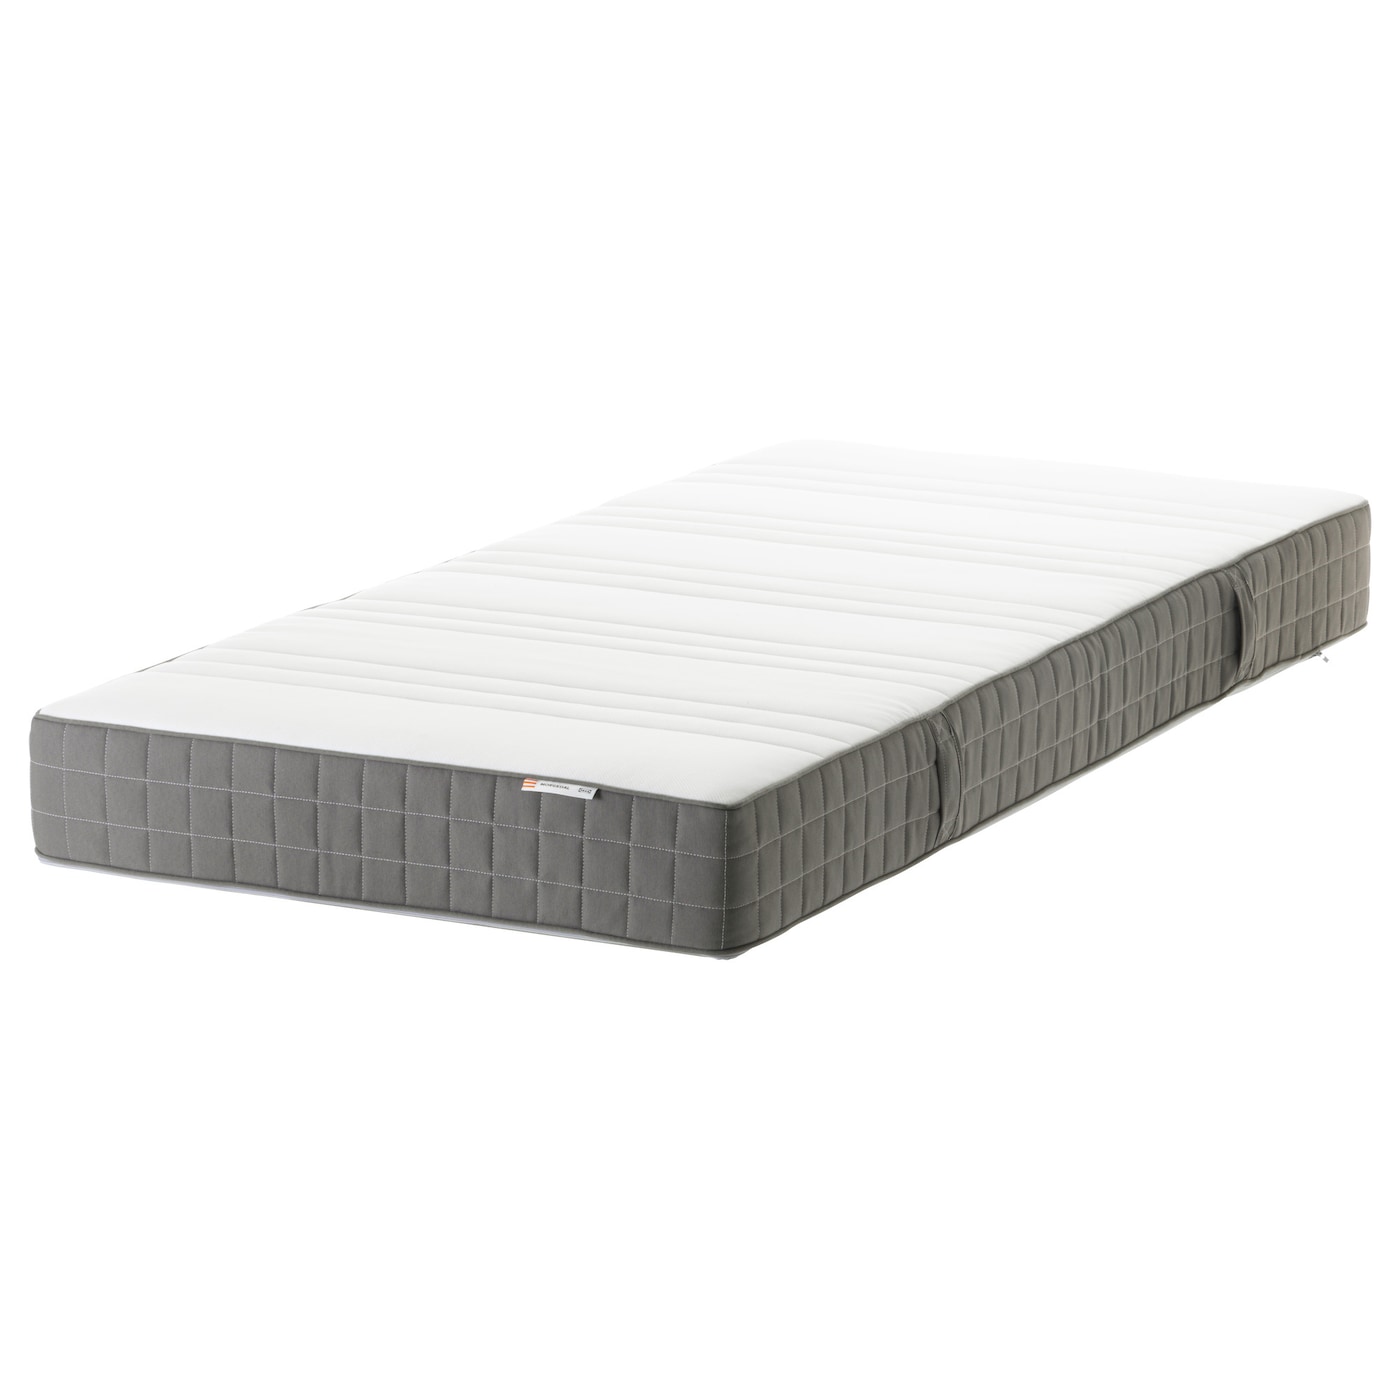 Morgedal mattress